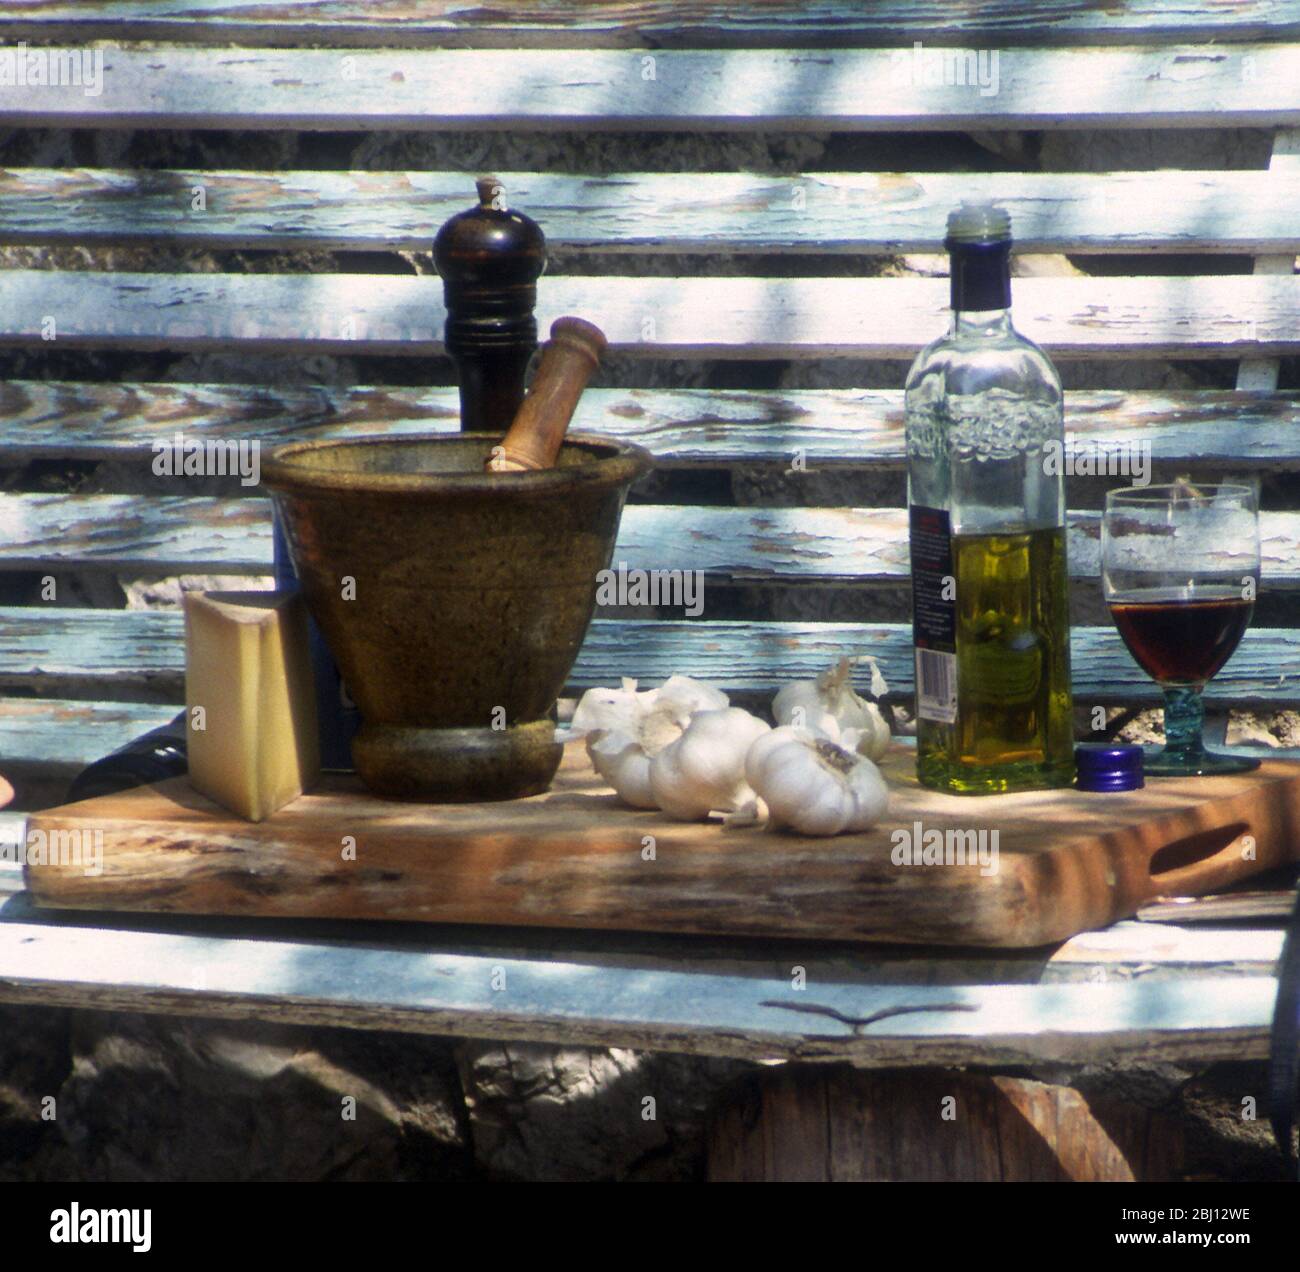 Zutaten im Freien - Olivenöl, Stößel und Mörser, Knoblauch - Rotwein, Pfeffermühle, Käse (Parmesan?) - - - Stockfoto